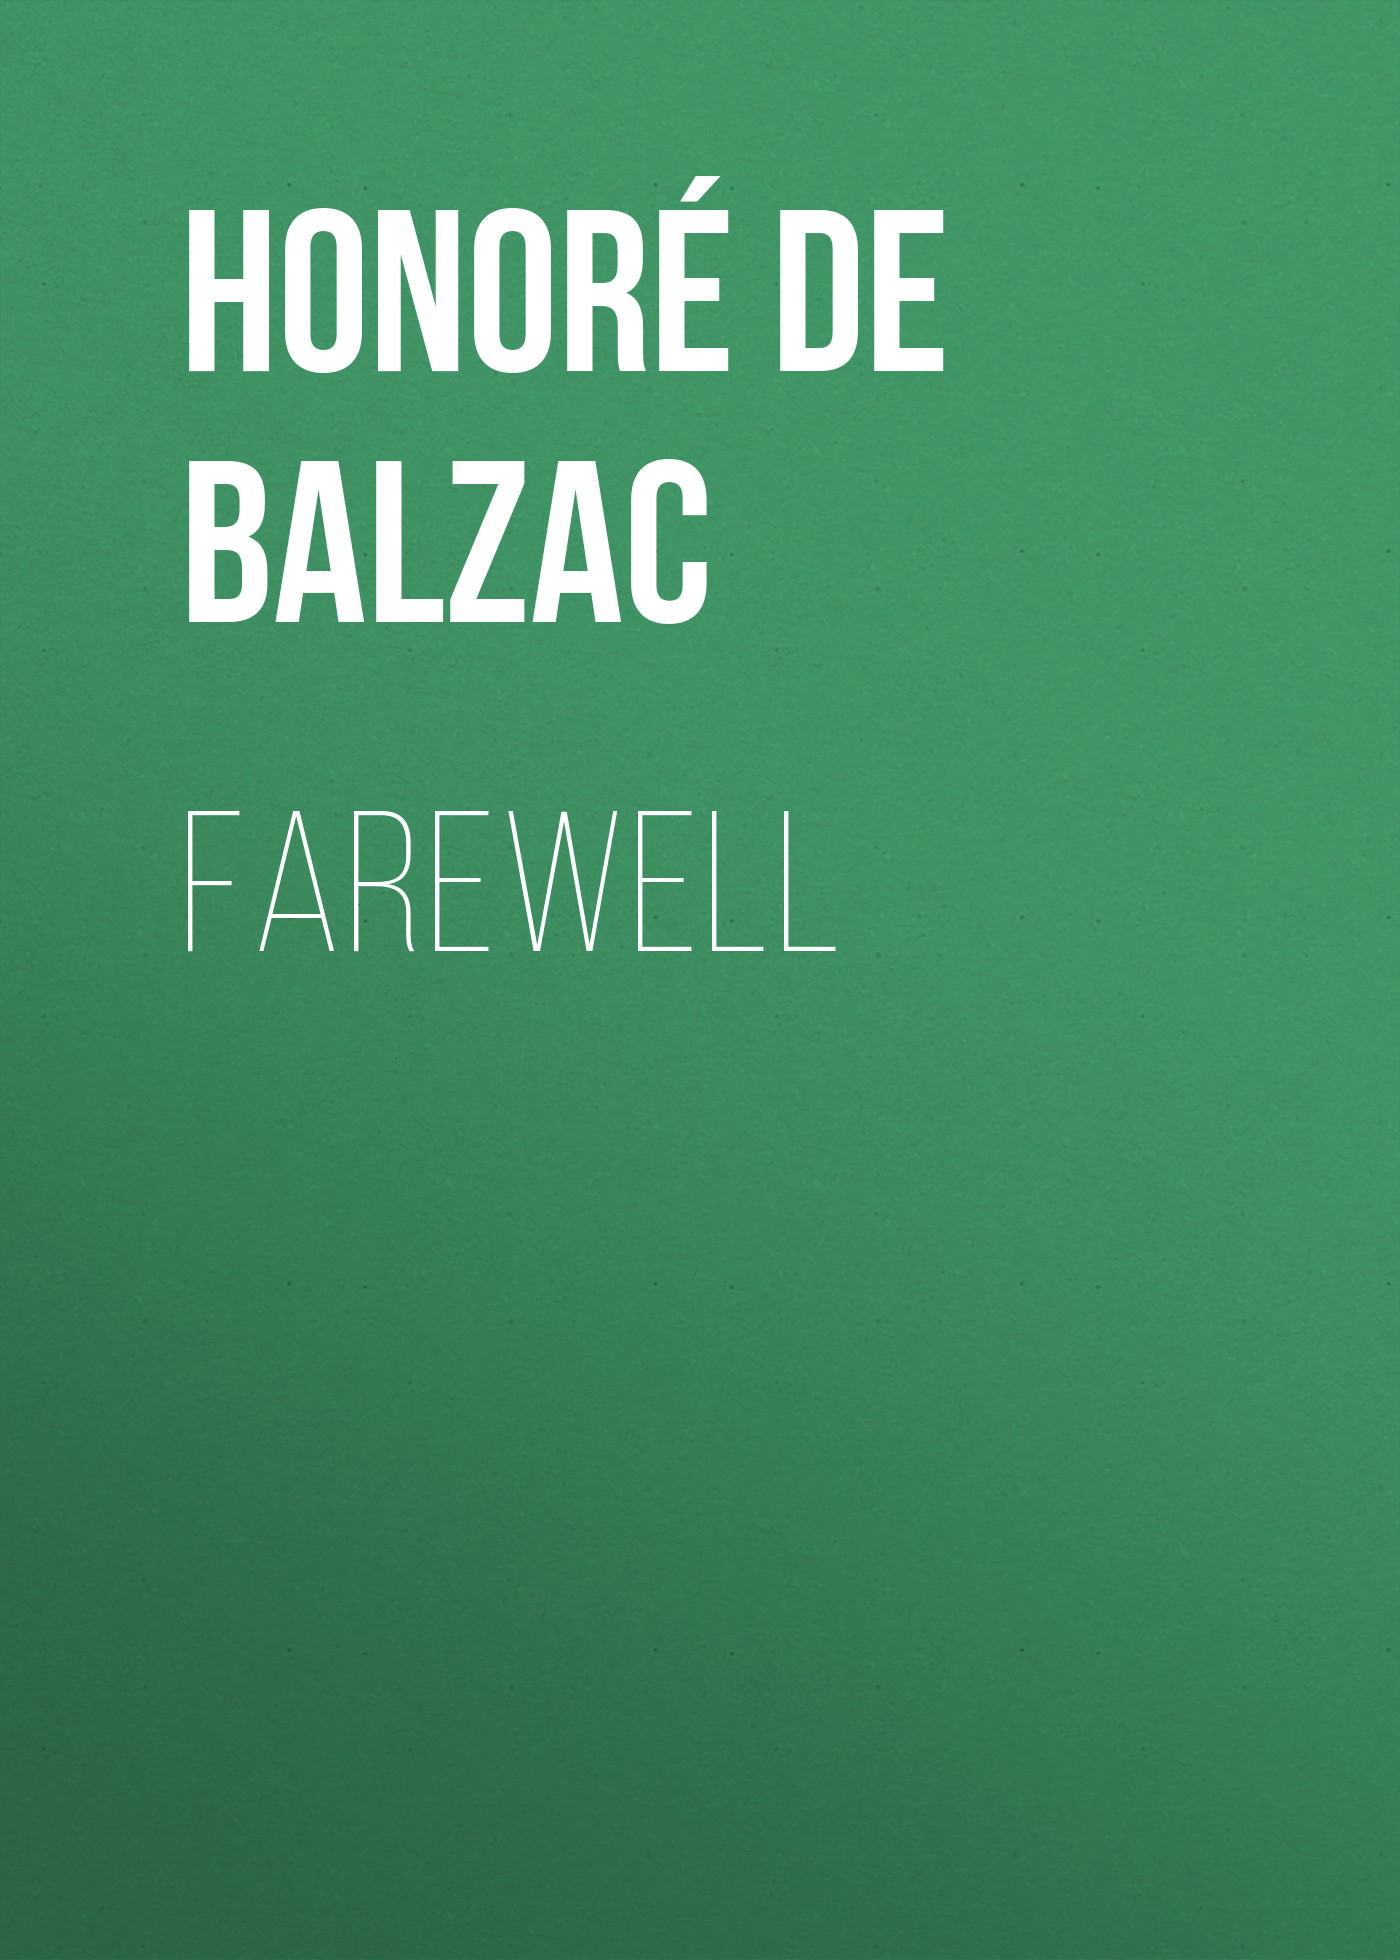 Книга Farewell из серии , созданная Honoré Balzac, может относится к жанру Литература 19 века, Зарубежная старинная литература, Зарубежная классика. Стоимость электронной книги Farewell с идентификатором 25021011 составляет 0 руб.